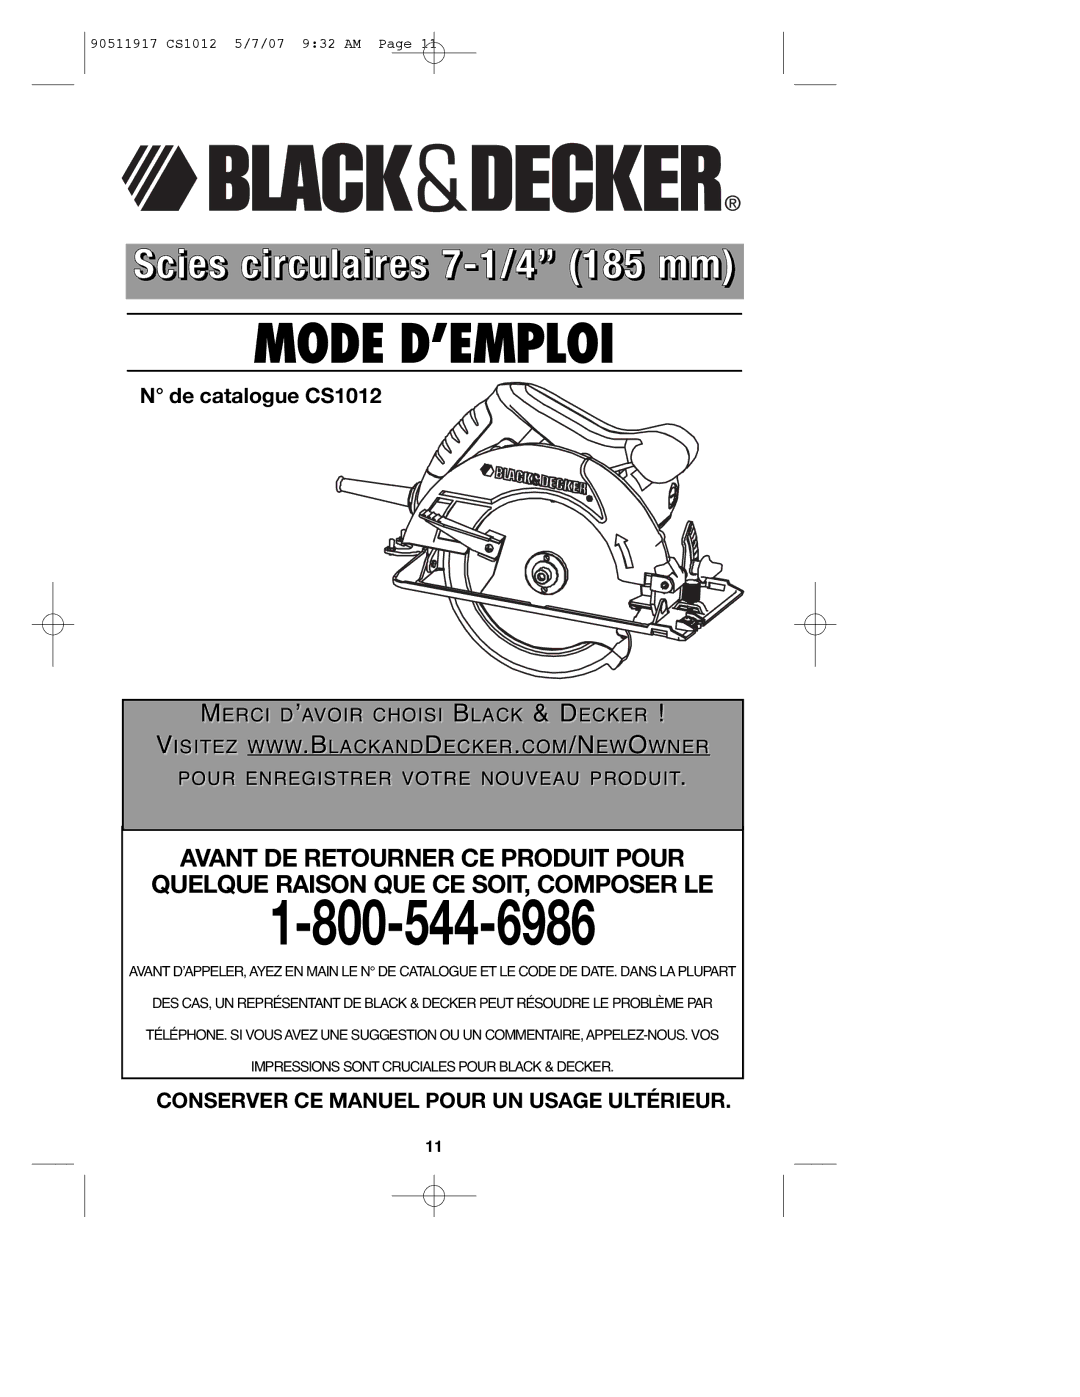 Black & Decker CS1012 instruction manual Mode D’EMPLOI 